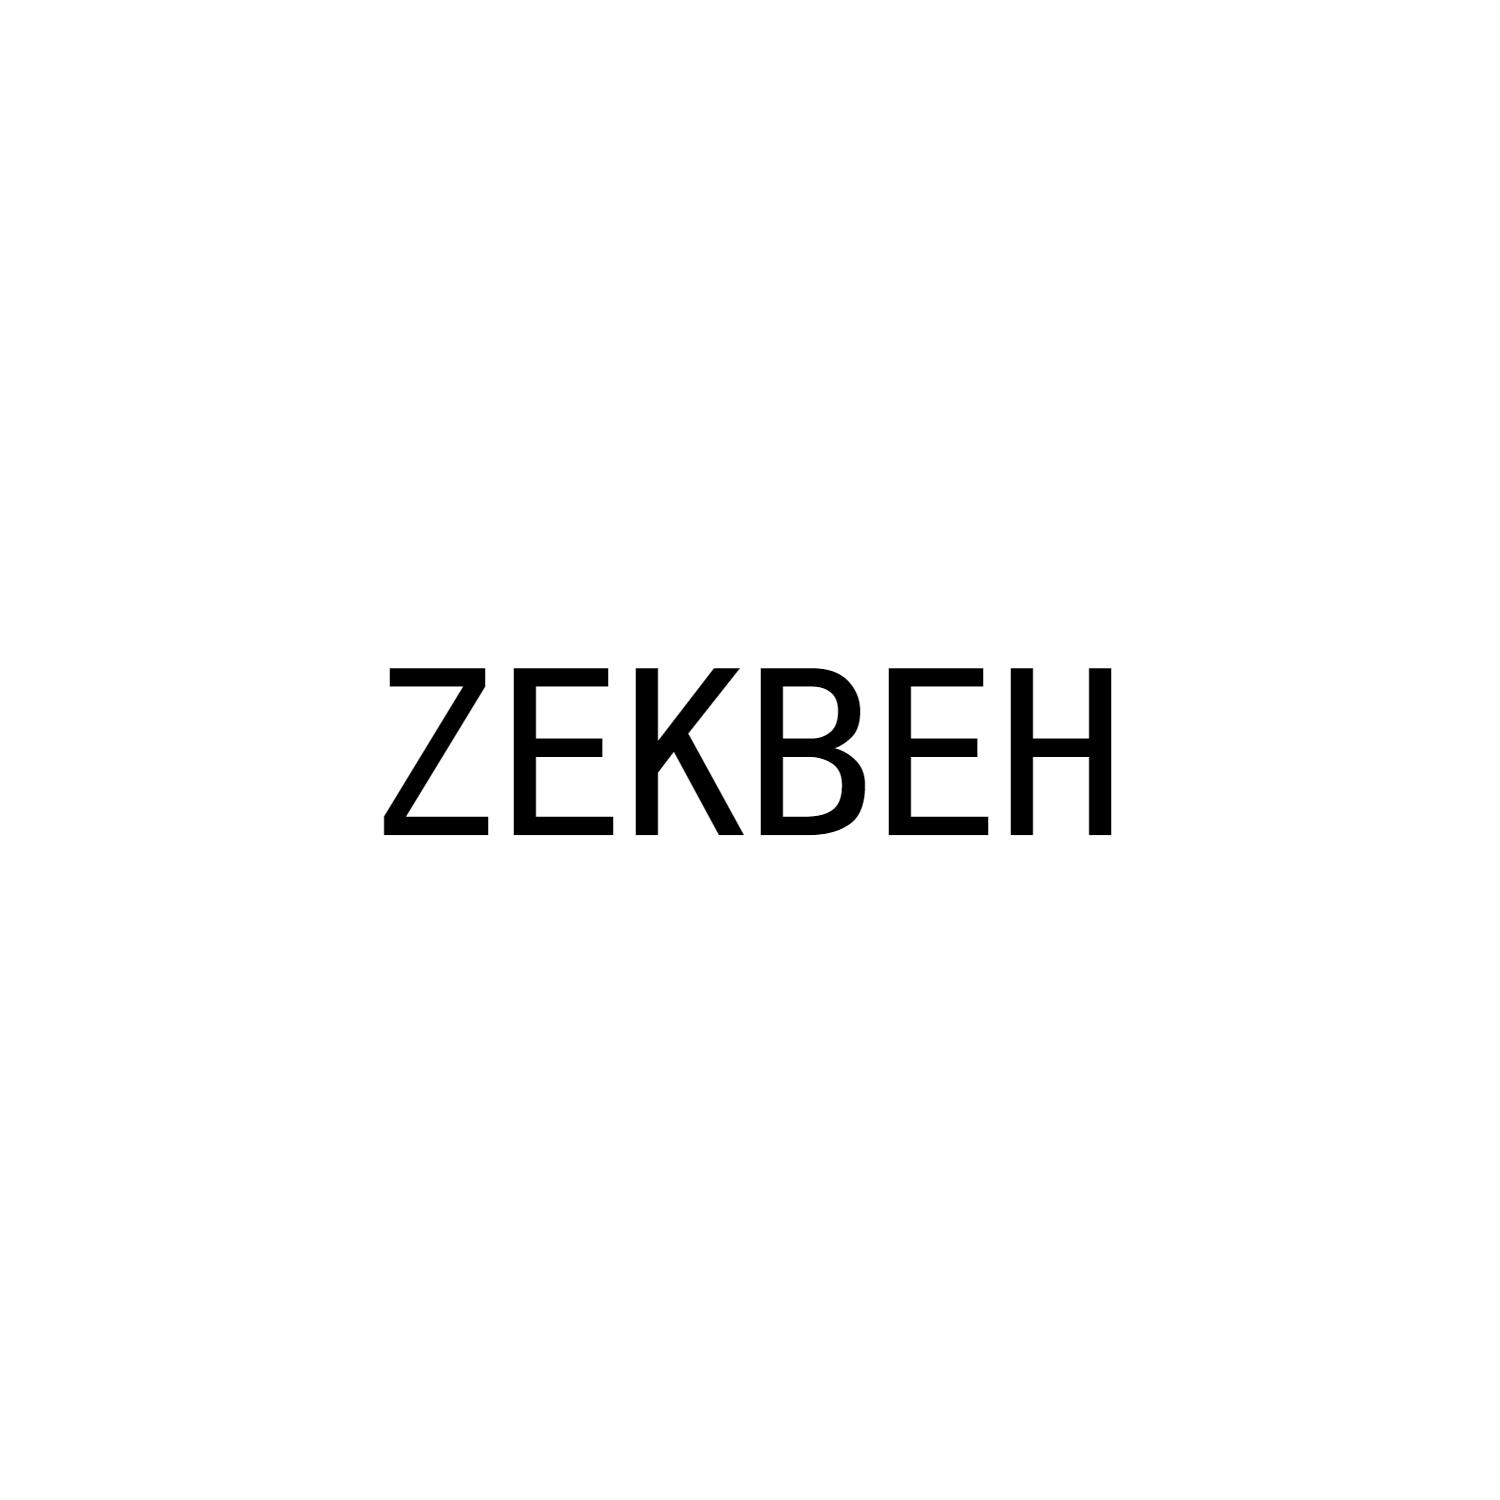 ZEKBEH